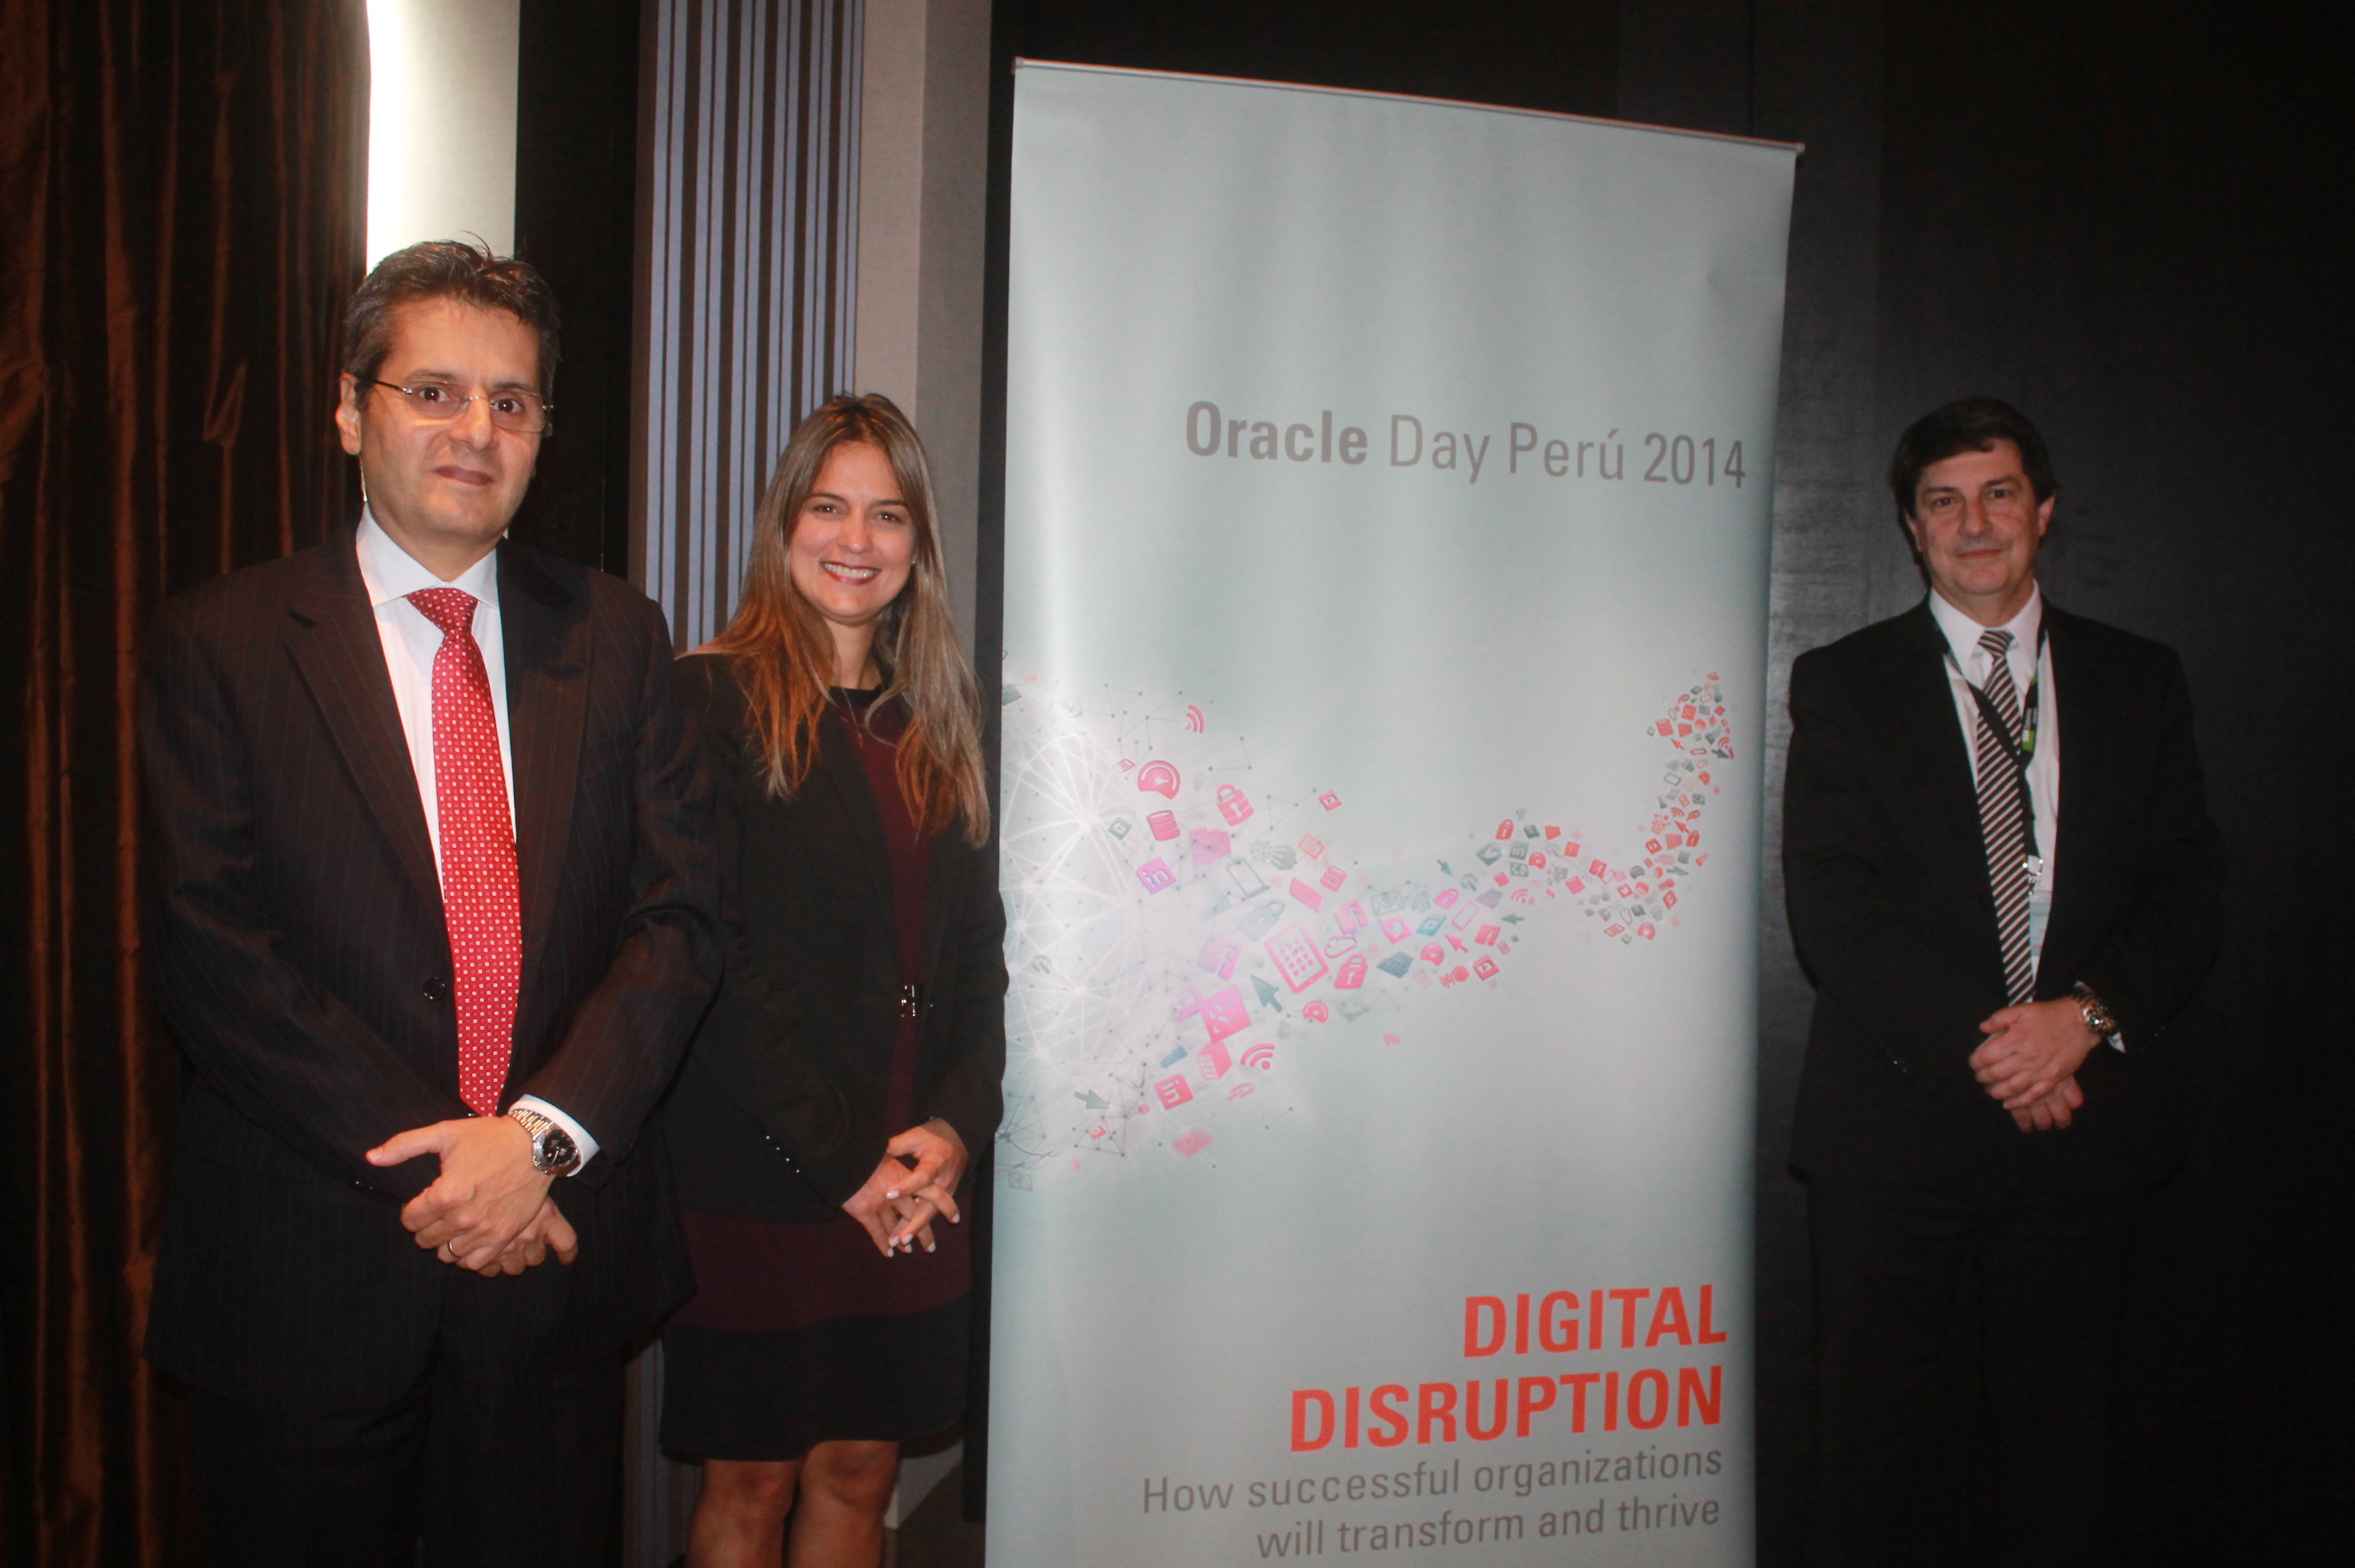 Oracle Day Perú: La disrupción digital marcará el camino de las organizaciones exitosas, ayudándolas a transformar sus modelos de negocios  